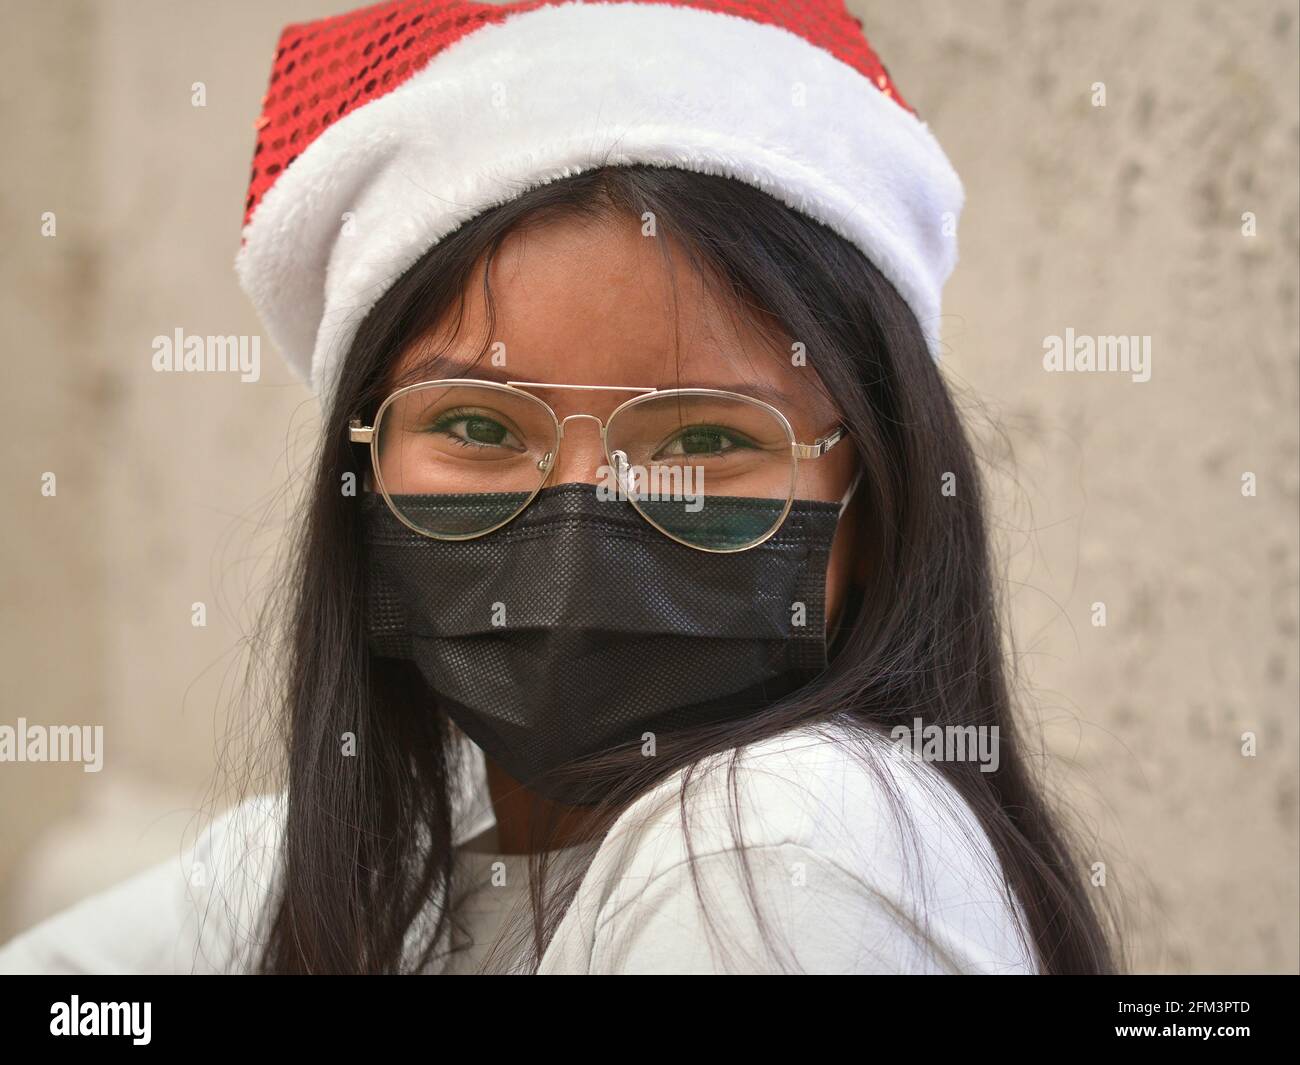 La ragazza adolescente dai capelli lunghi con occhiali aviatori indossa un simpatico cappello di Babbo Natale e una maschera nera monouso durante la pandemia del virus della corona. Foto Stock